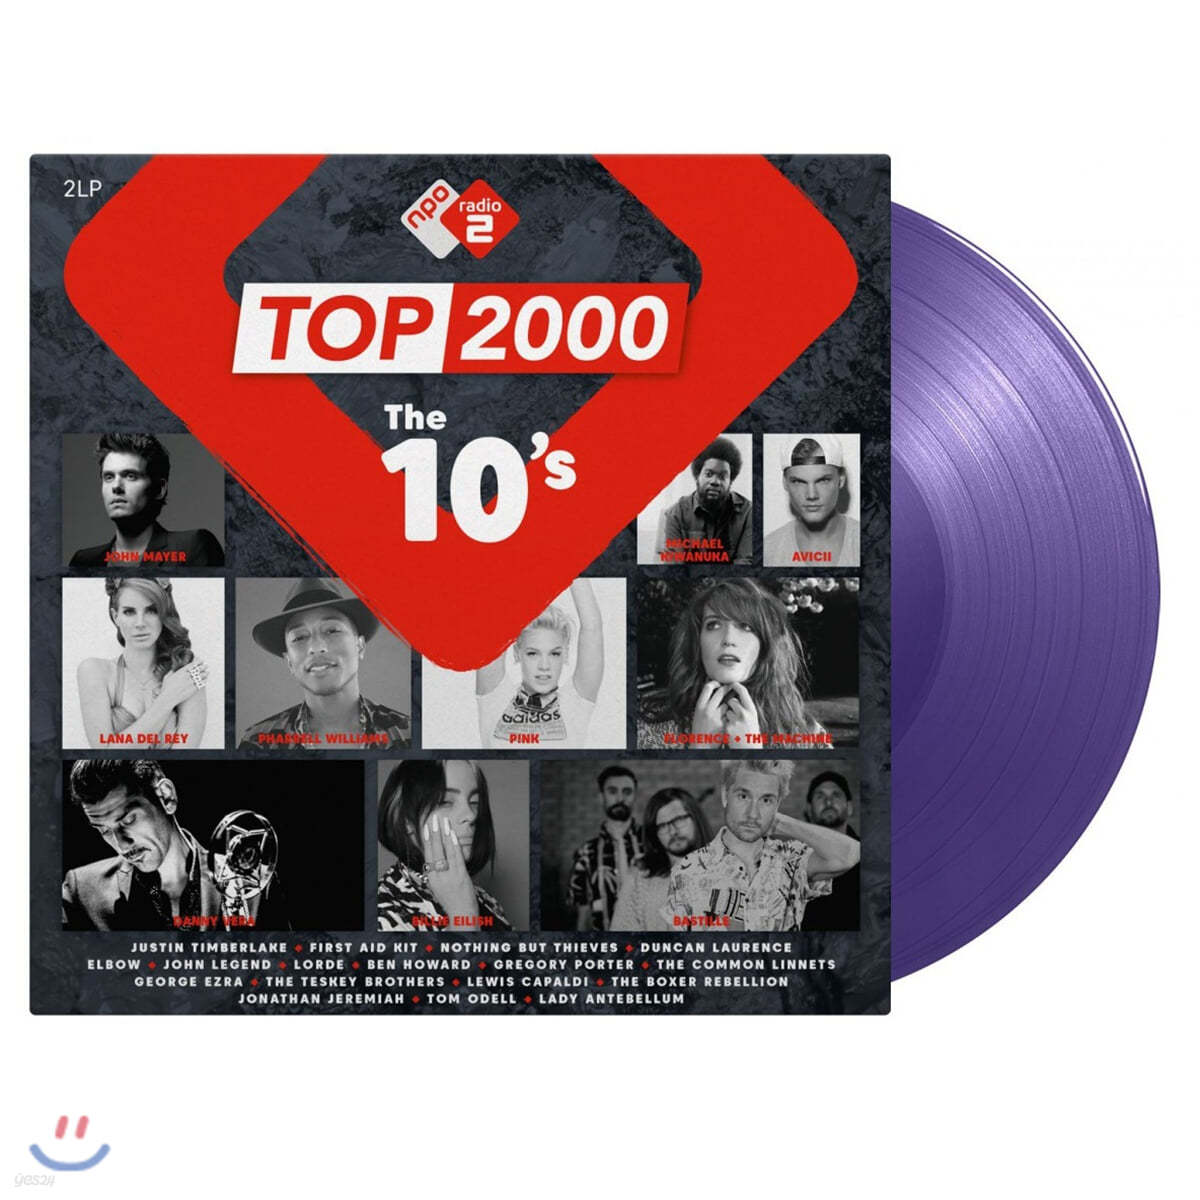 NPO 라디오 컴필레이션: 2010년대 히트곡 모음집 (Top 2000 - The 10's) [퍼플 컬러 2LP] 